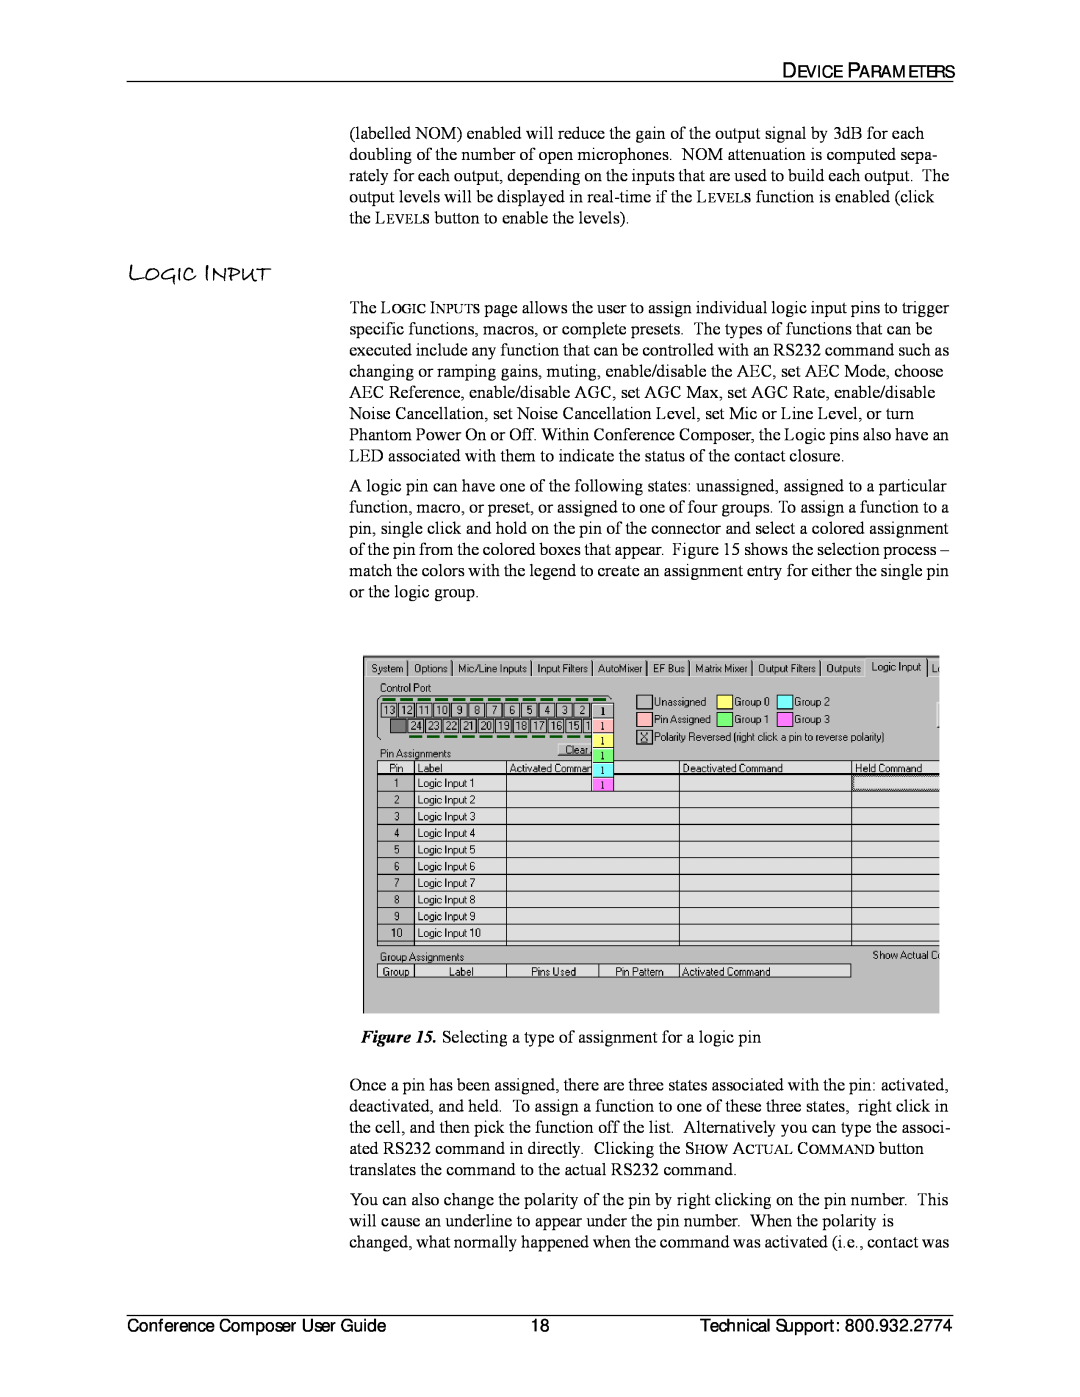 Polycom CCUG-0100-01 manual Logic Input 